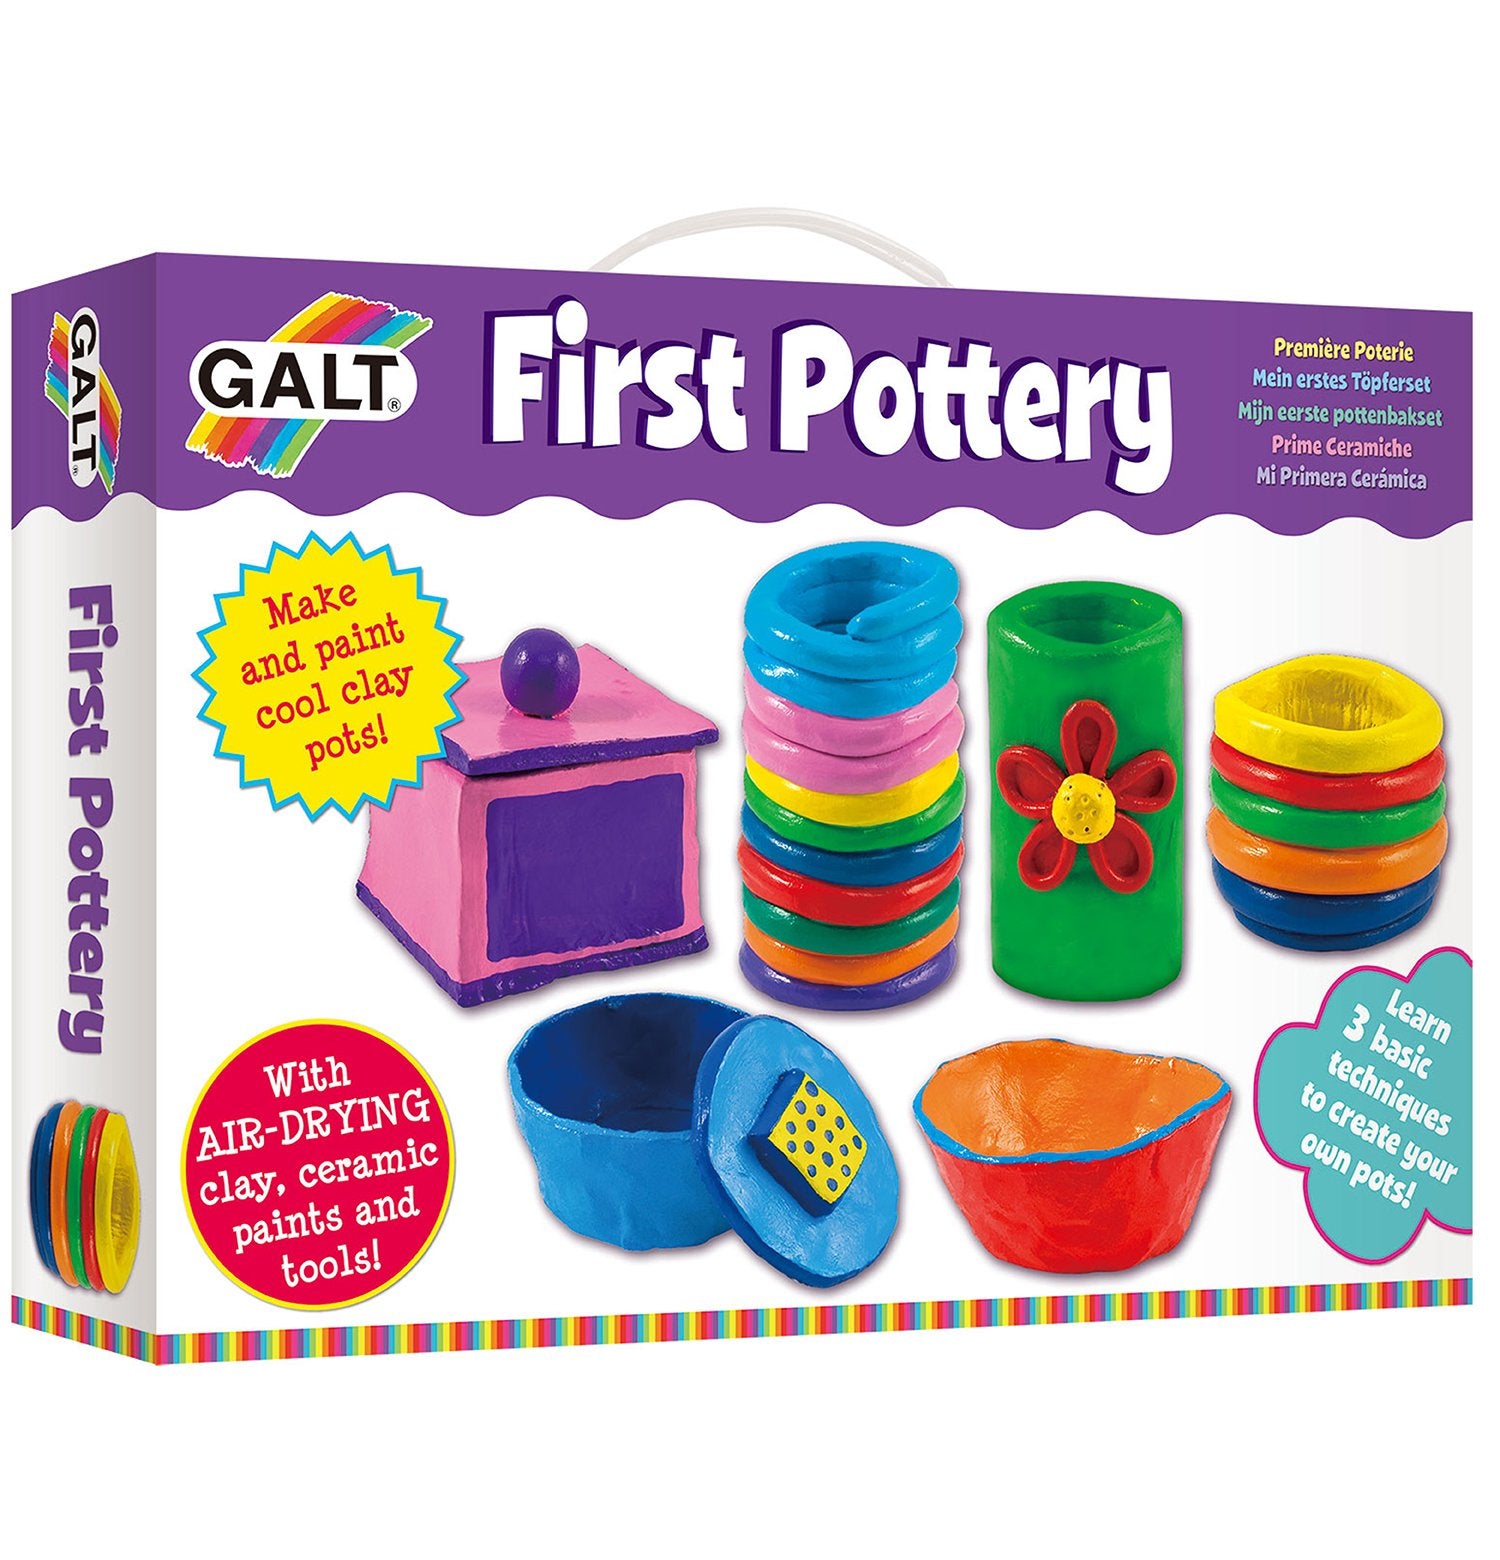 First Pottery - Galt